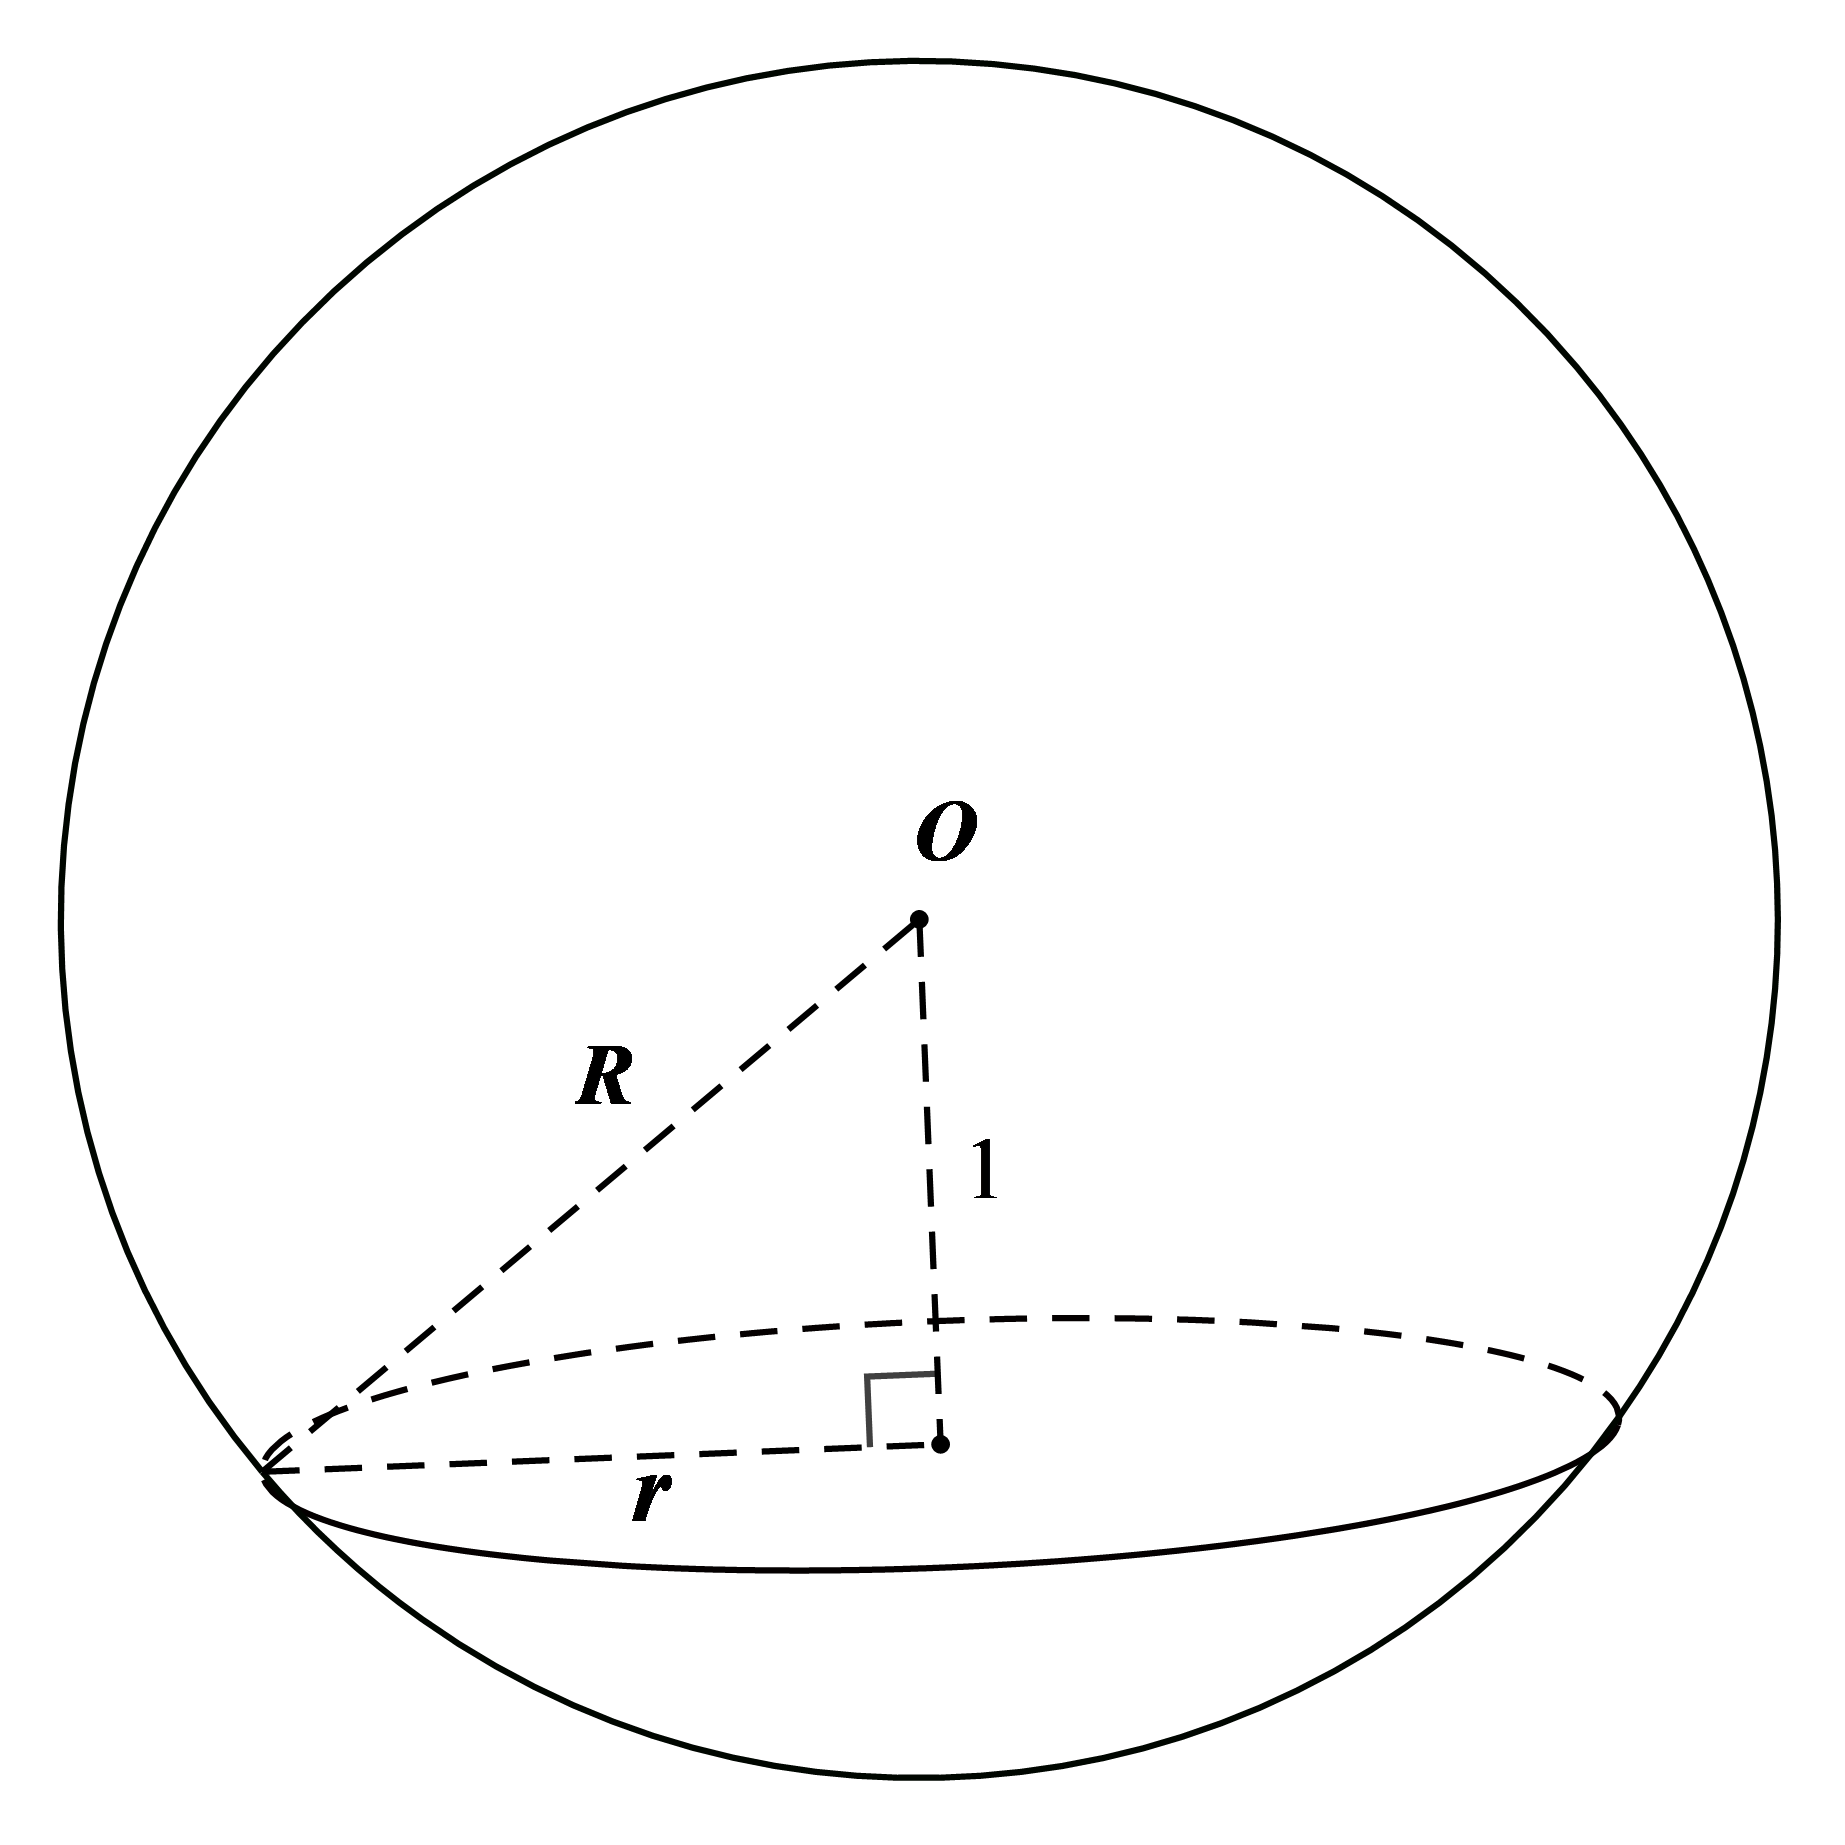 Cho mặt cầu (S) tâm O , bán kính R = 3. Một mặt phẳng (P) cắt (S) theo giao tuyến là đường tròn (C) sao cho khoảng cách từ tâm O đến  (ảnh 1)